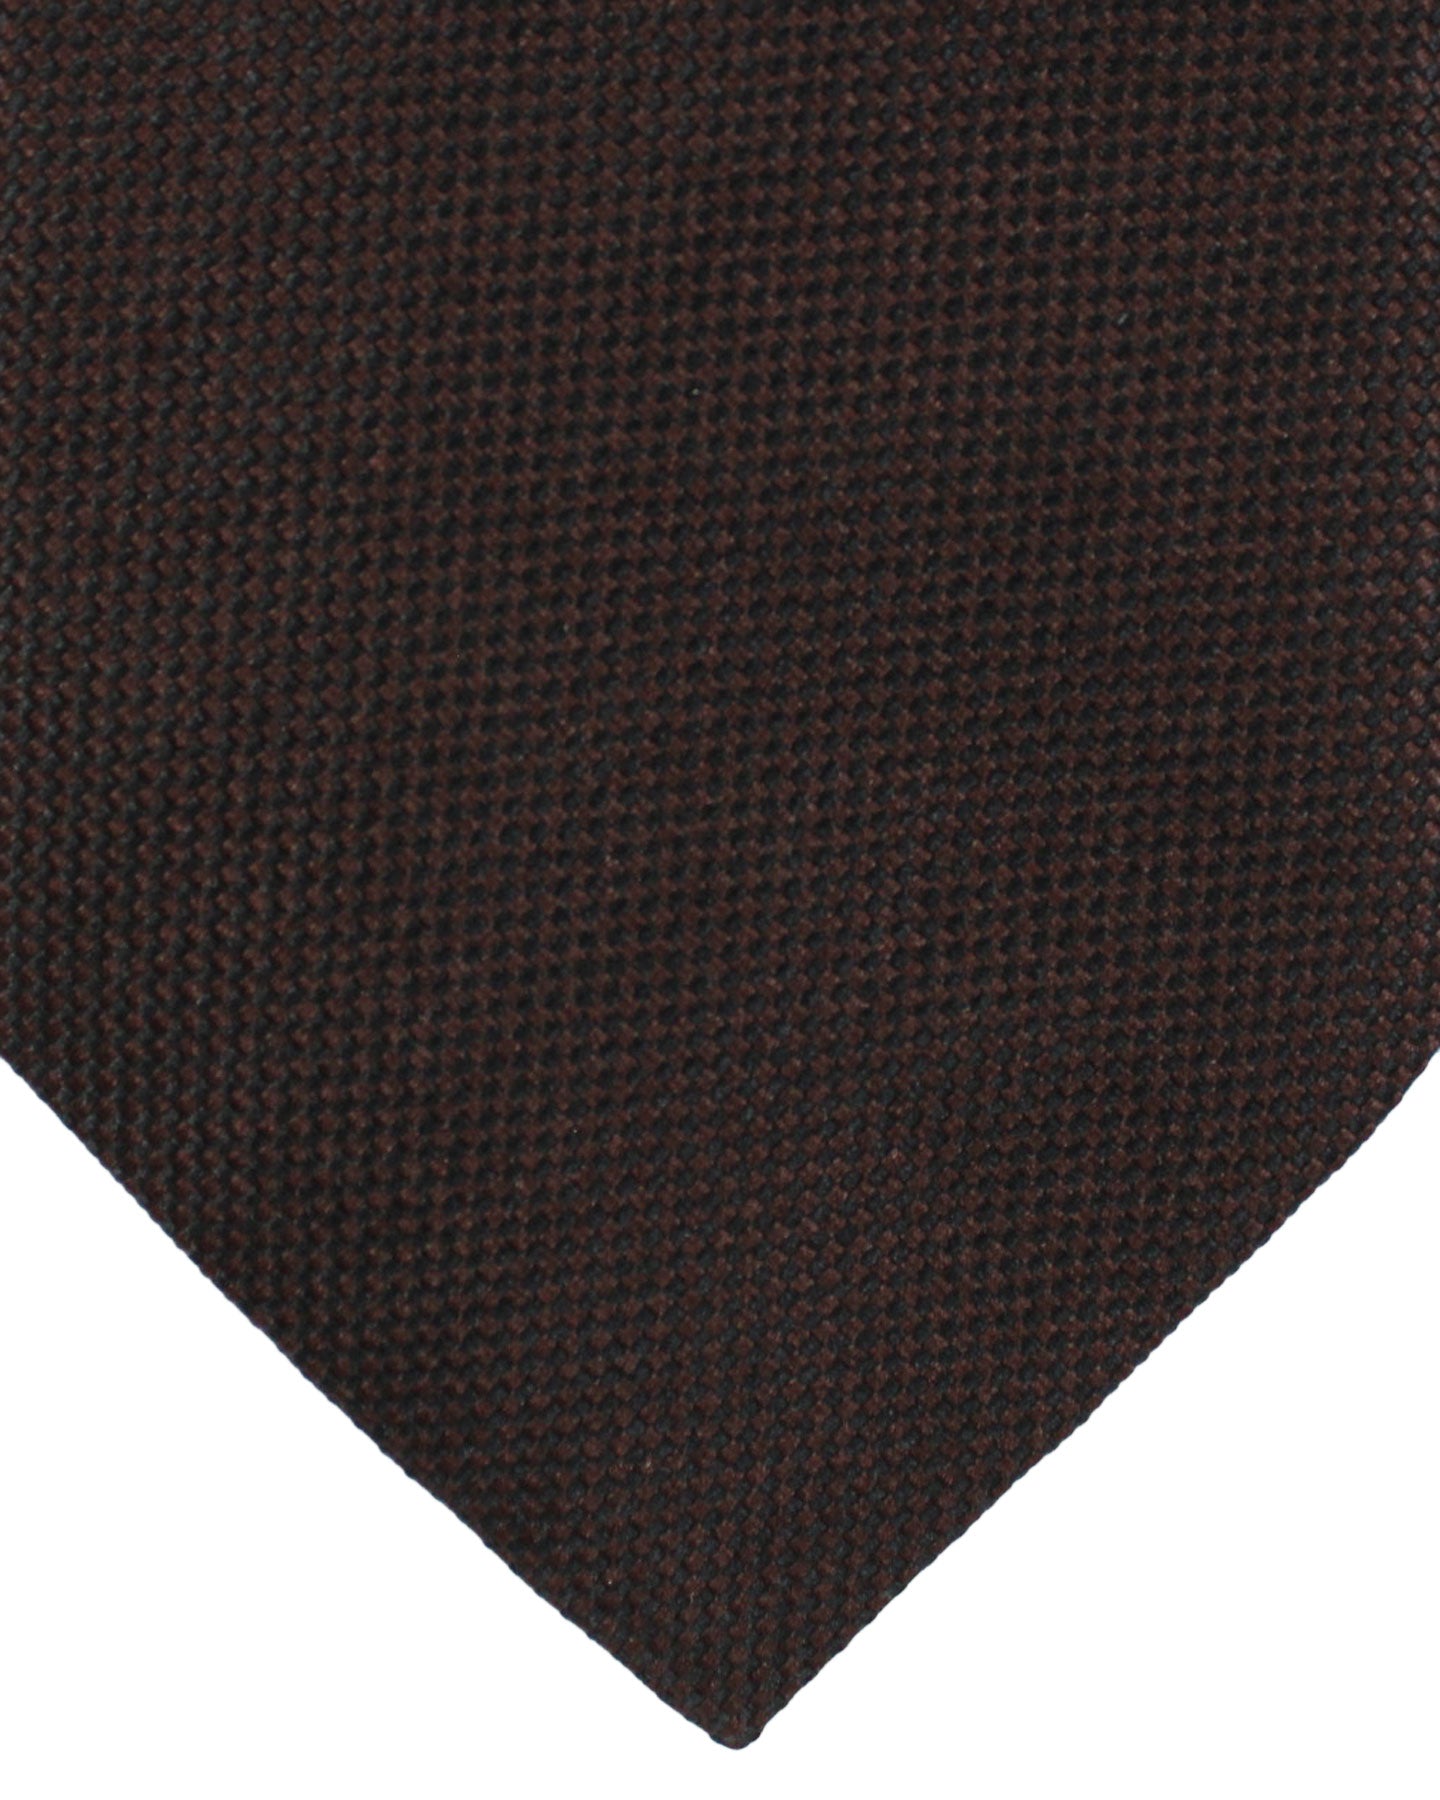 Zilli Silk Tie Brown Solid Pattern - Wide Necktie